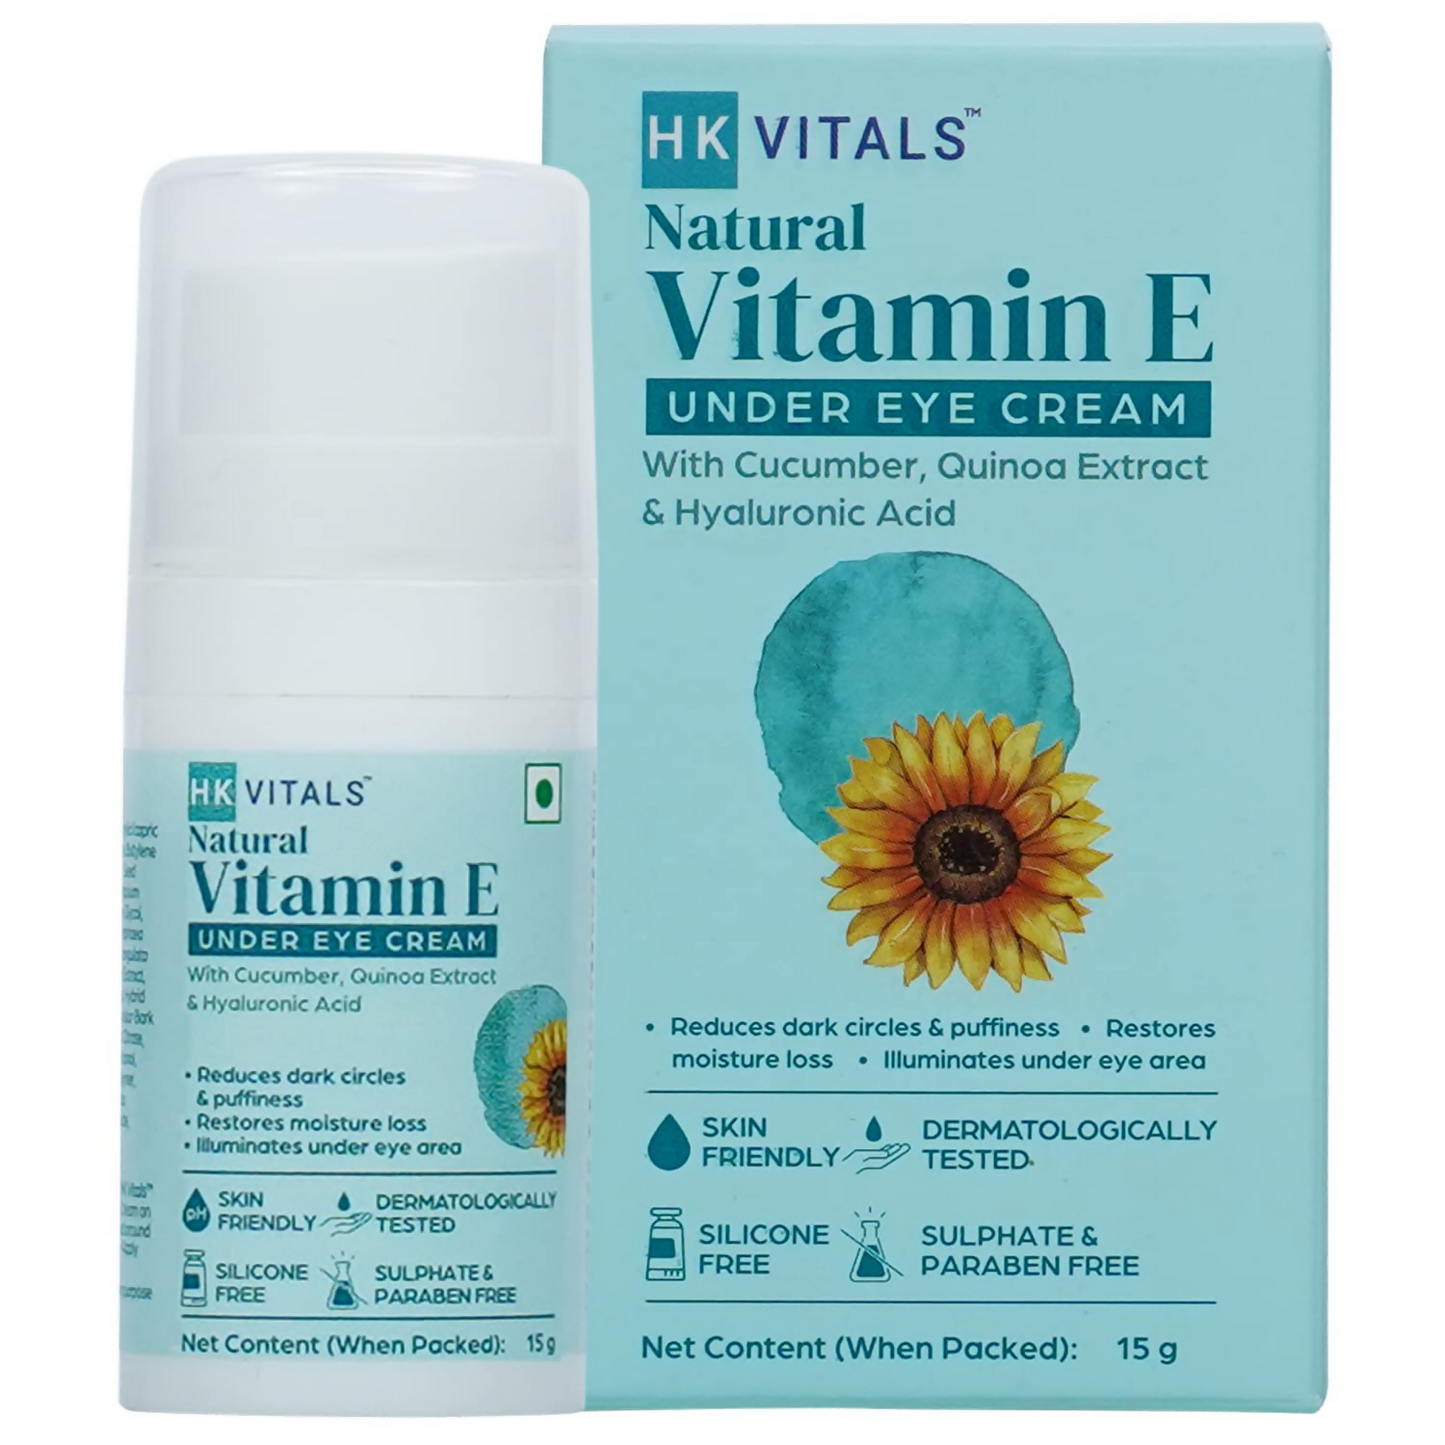 HK Vitals Vitamin E Under Eye Cream - BUDNEN